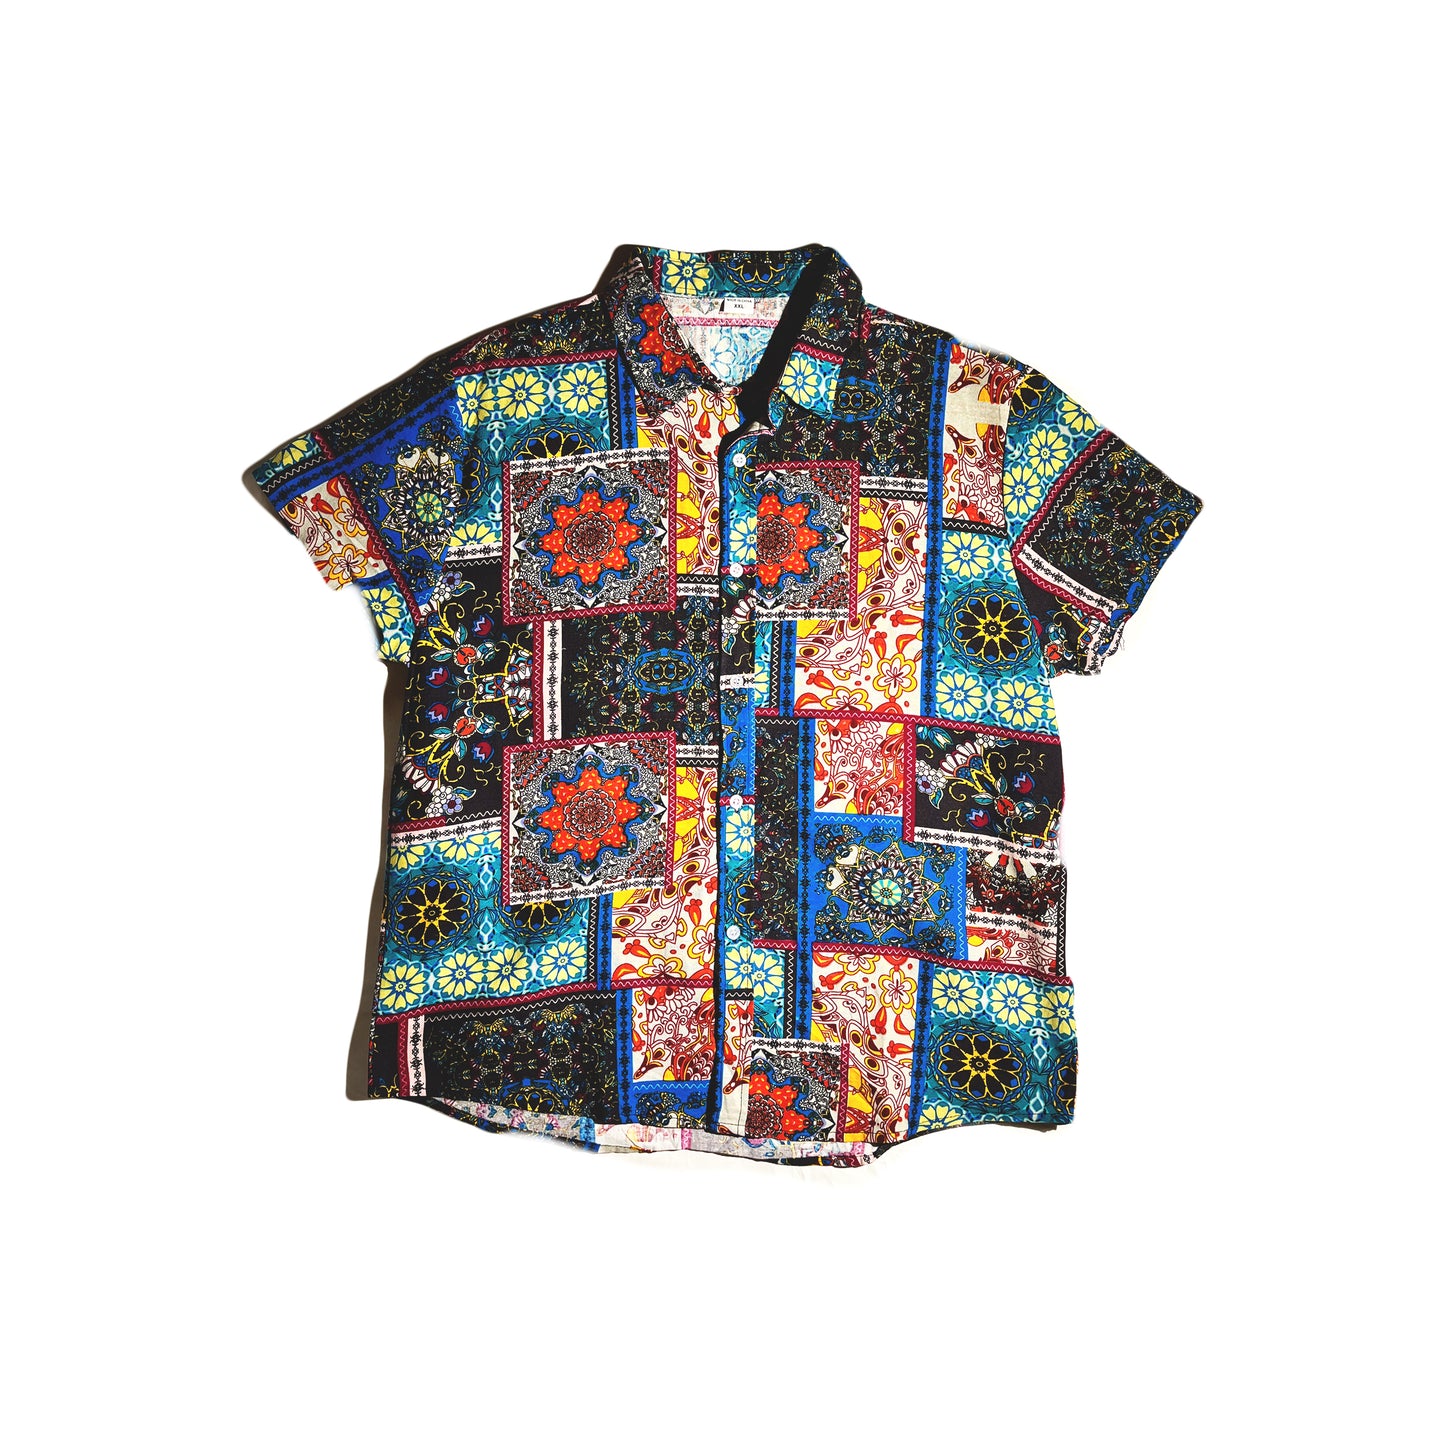 Vintage Button Up Shirt Paisley Abstract Art Hawaiian